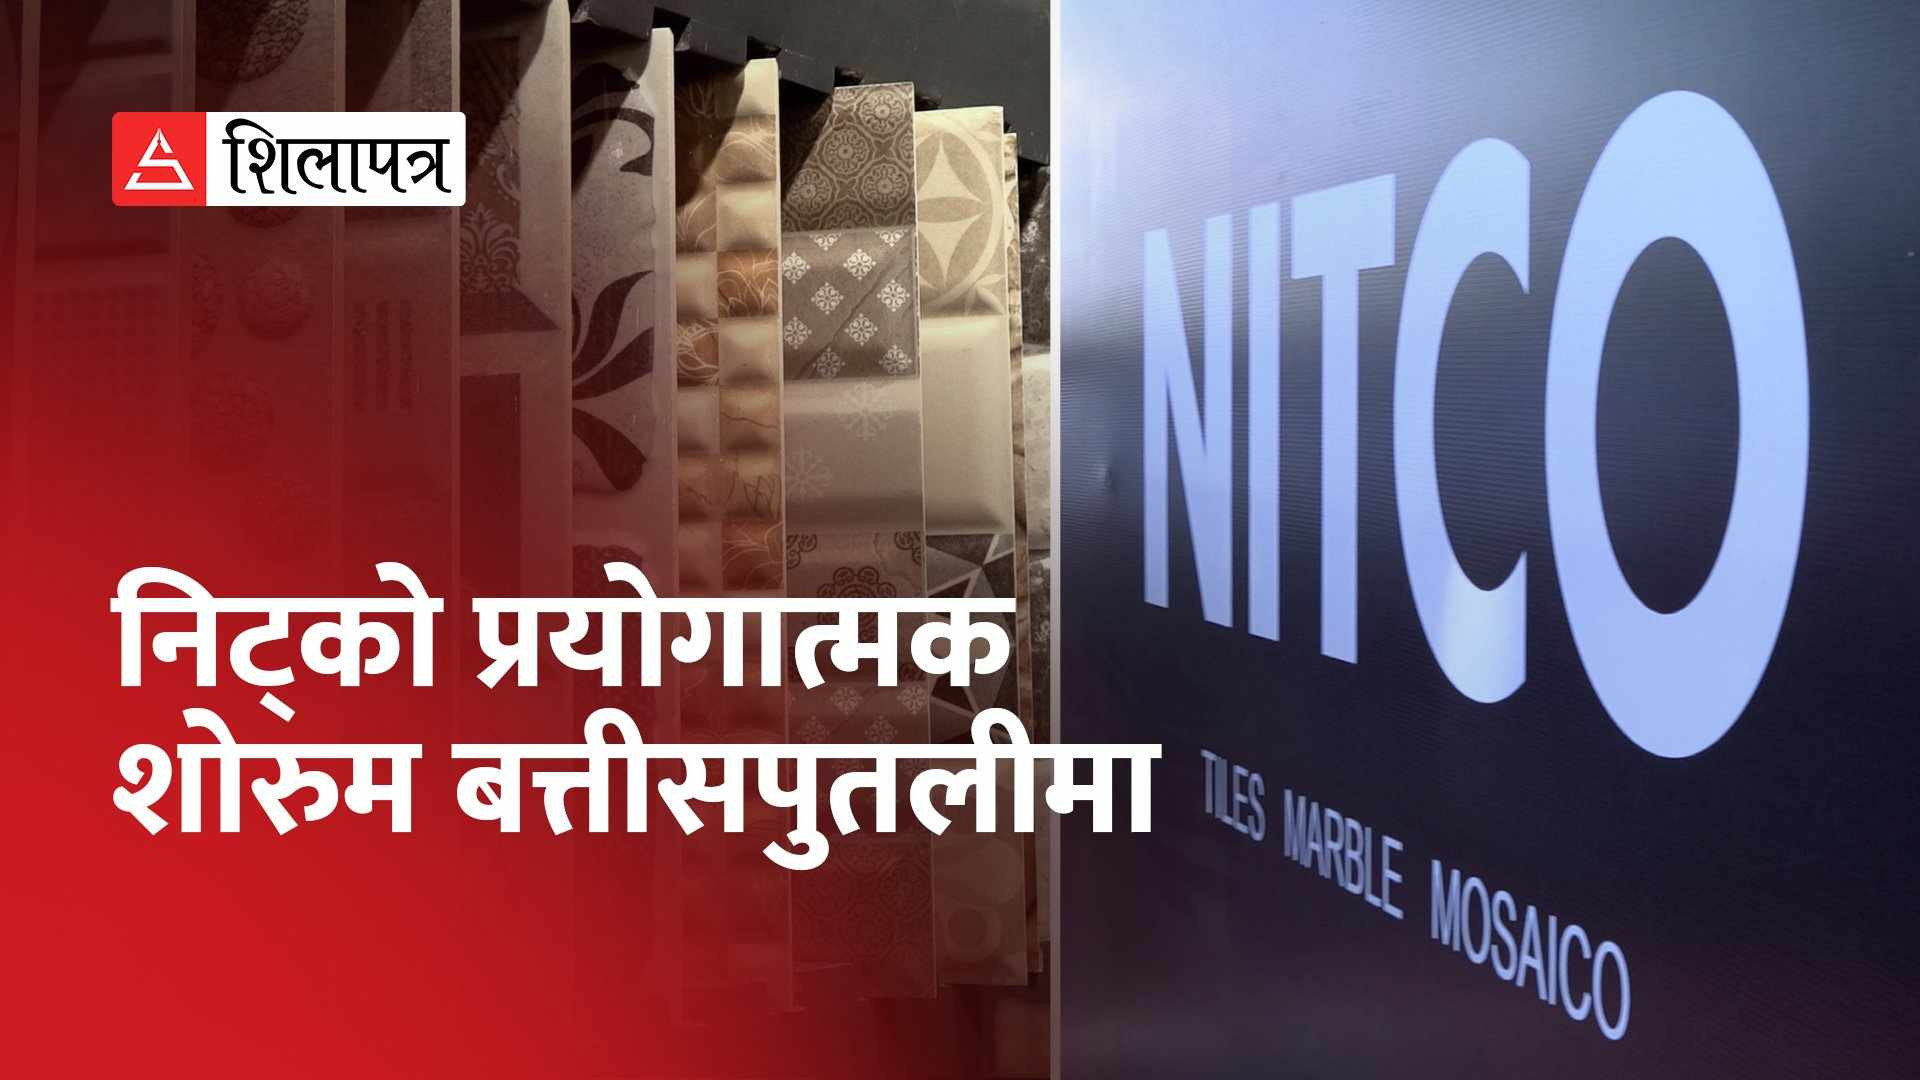 बत्तीसपुतलीमा खुल्यो भारतीय कम्पनी निट्कोको प्रयोगात्मक शोरुम (भिडियो)